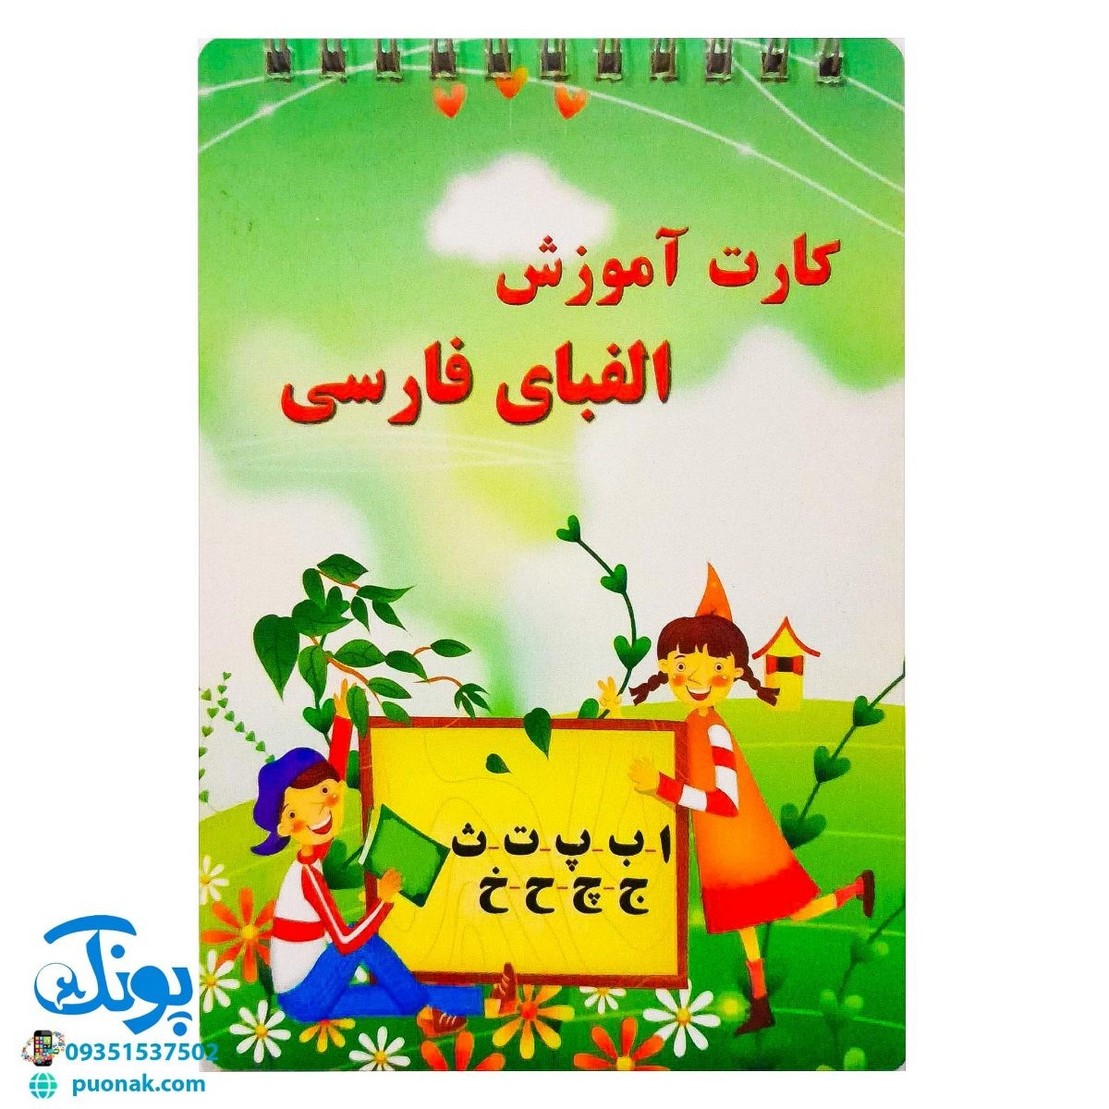 کارت آموزش الفبای فارسی دفترچه سیمی بزرگ مدل بابک